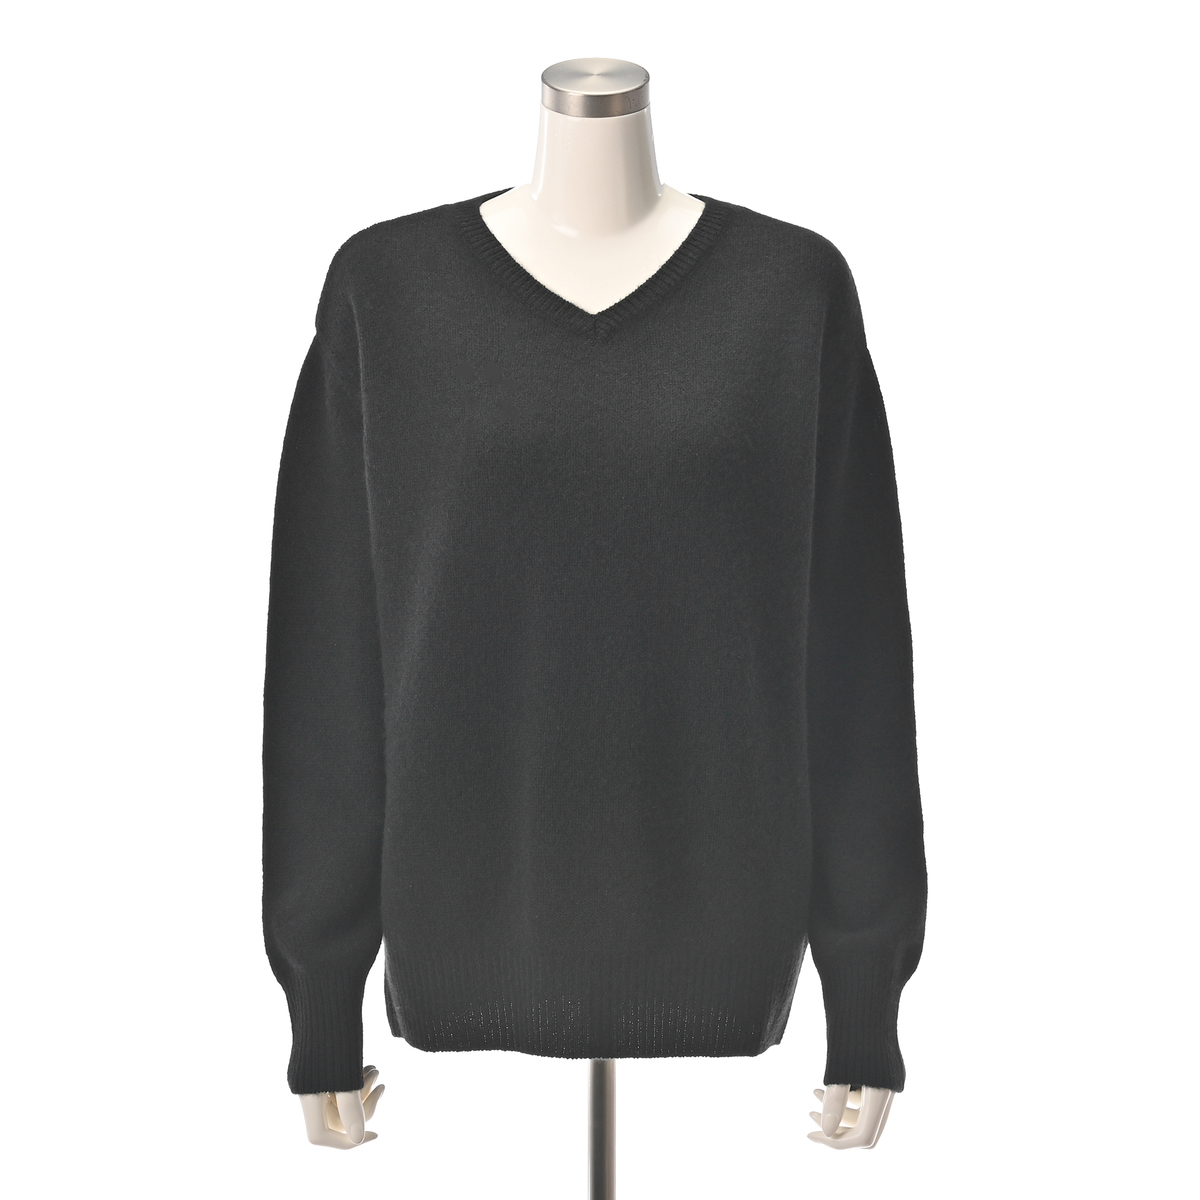  Anne Coquine Luxe ヤクミックスVネックベーシックセーター  S  ブラック